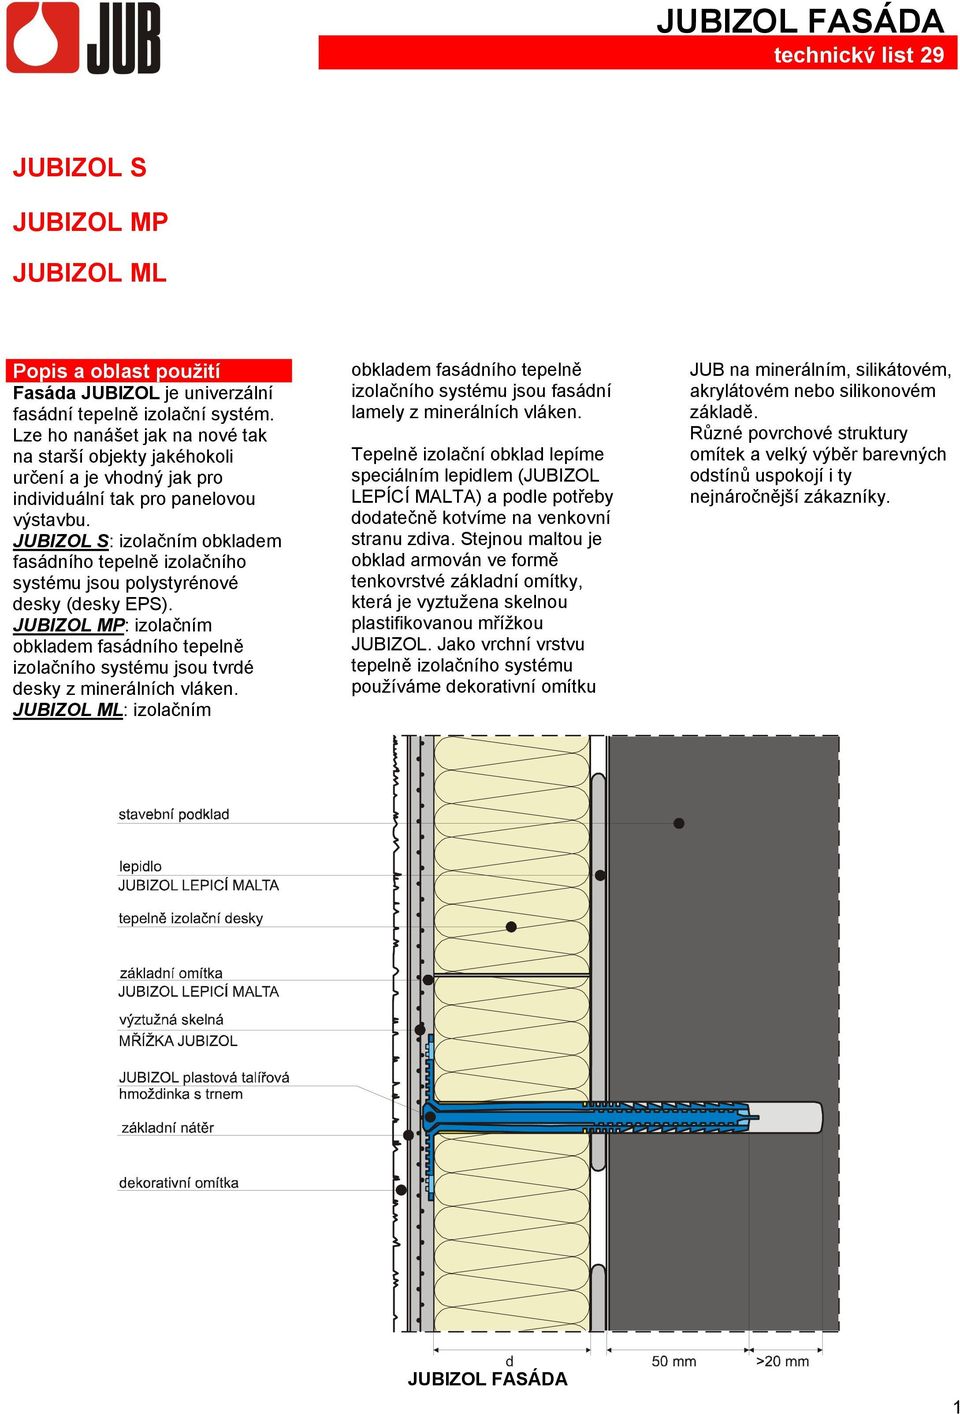 JUBIZOL S: izolačním obkladem fasádního tepelně izolačního systému jsou polystyrénové desky (desky EPS).